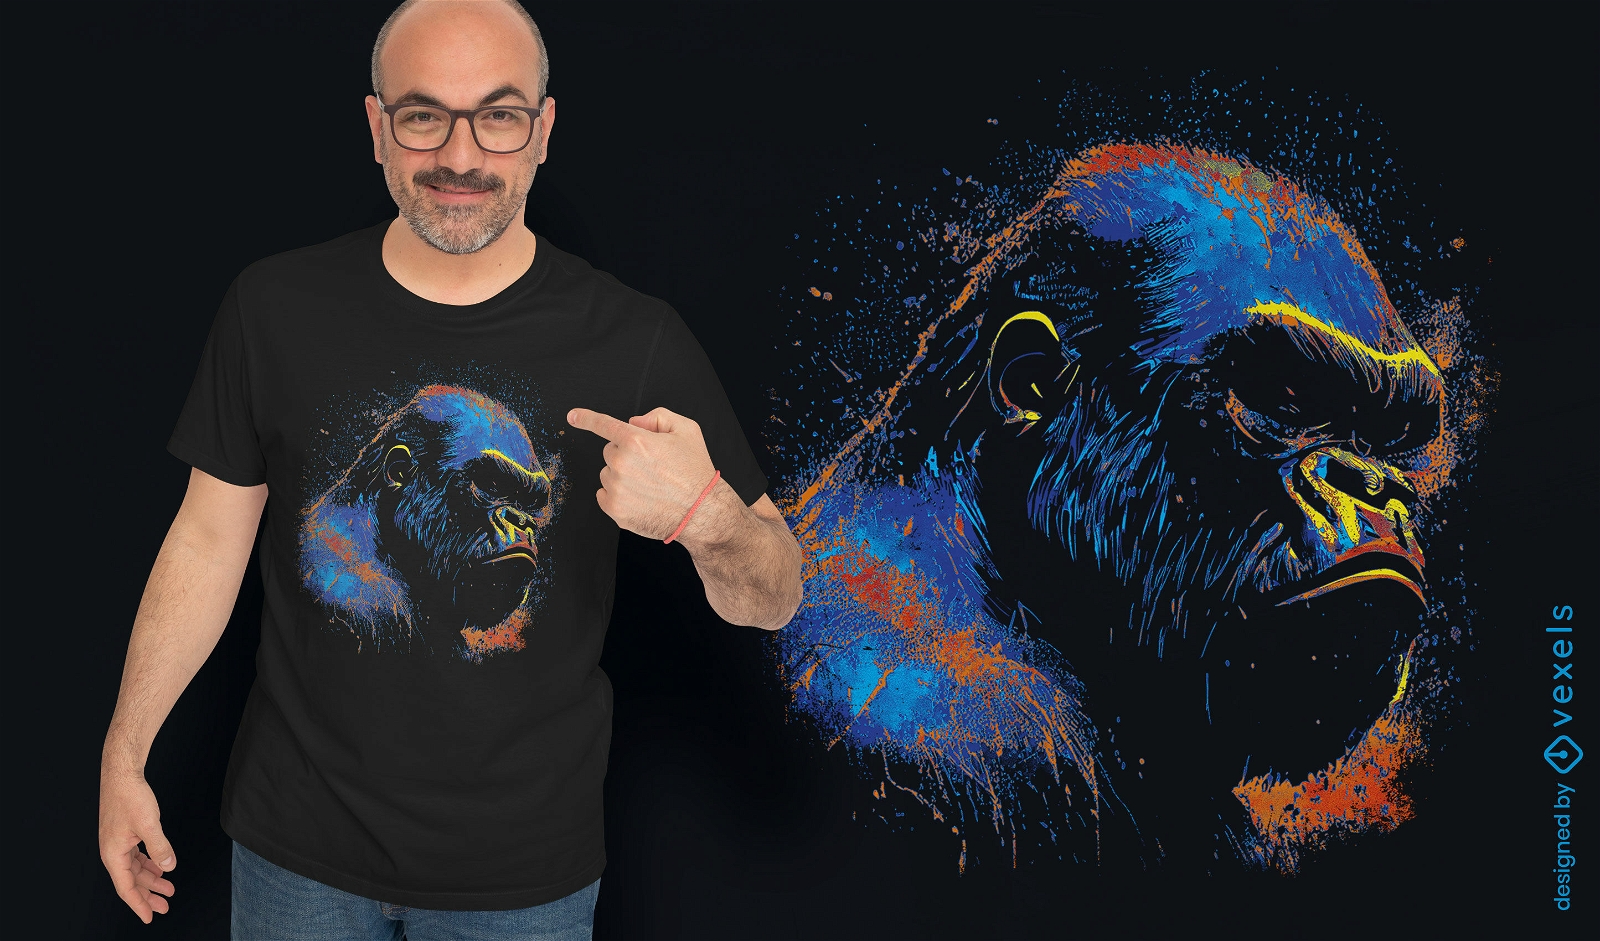 Dise?o de camiseta con retrato de gorila colorido.